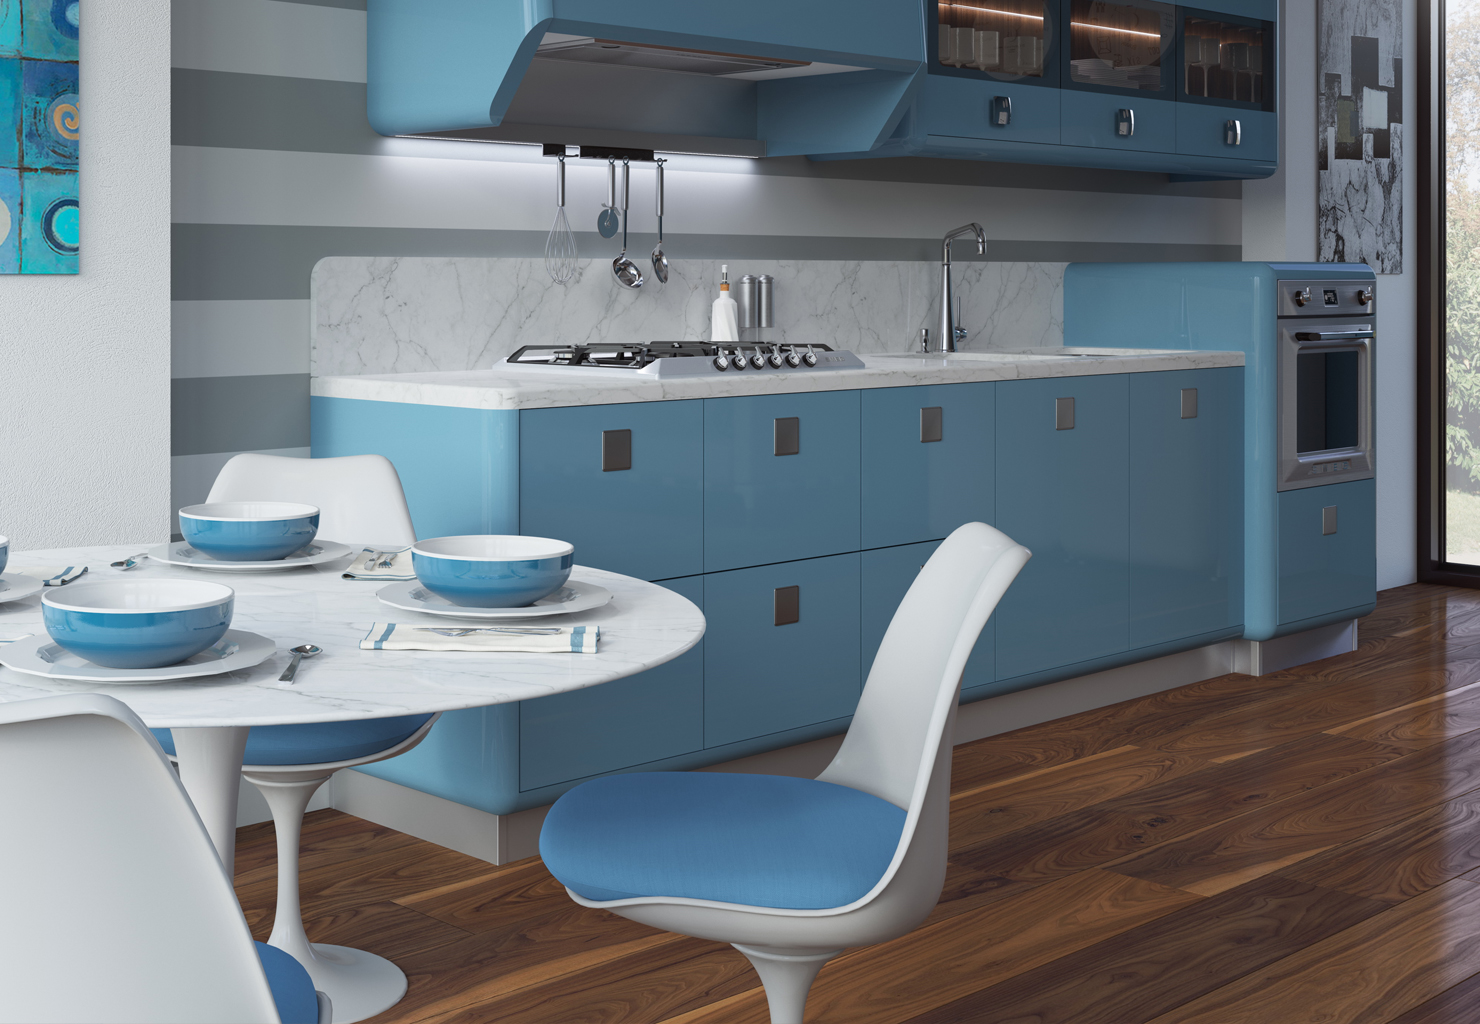 Какой цвет сочетается с синим в интерьере кухни фото